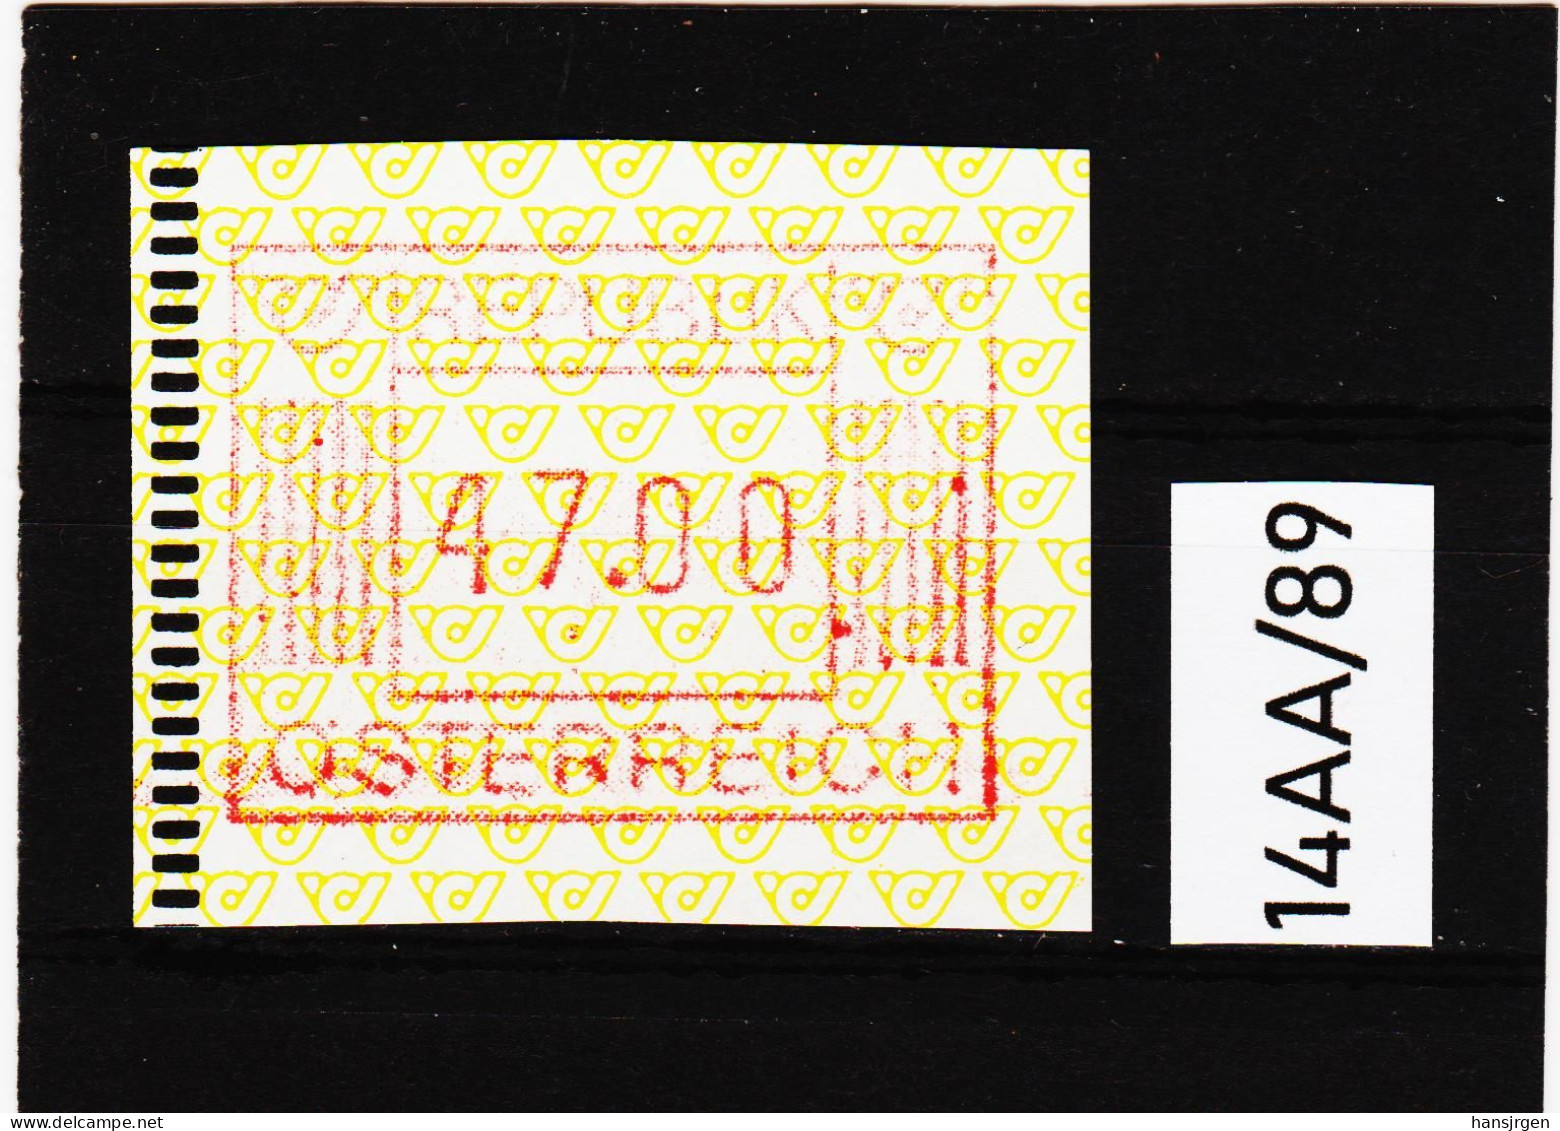 14AA/89  ÖSTERREICH 1983 AUTOMATENMARKEN 1. AUSGABE  47,00 SCHILLING   ** Postfrisch - Automatenmarken [ATM]